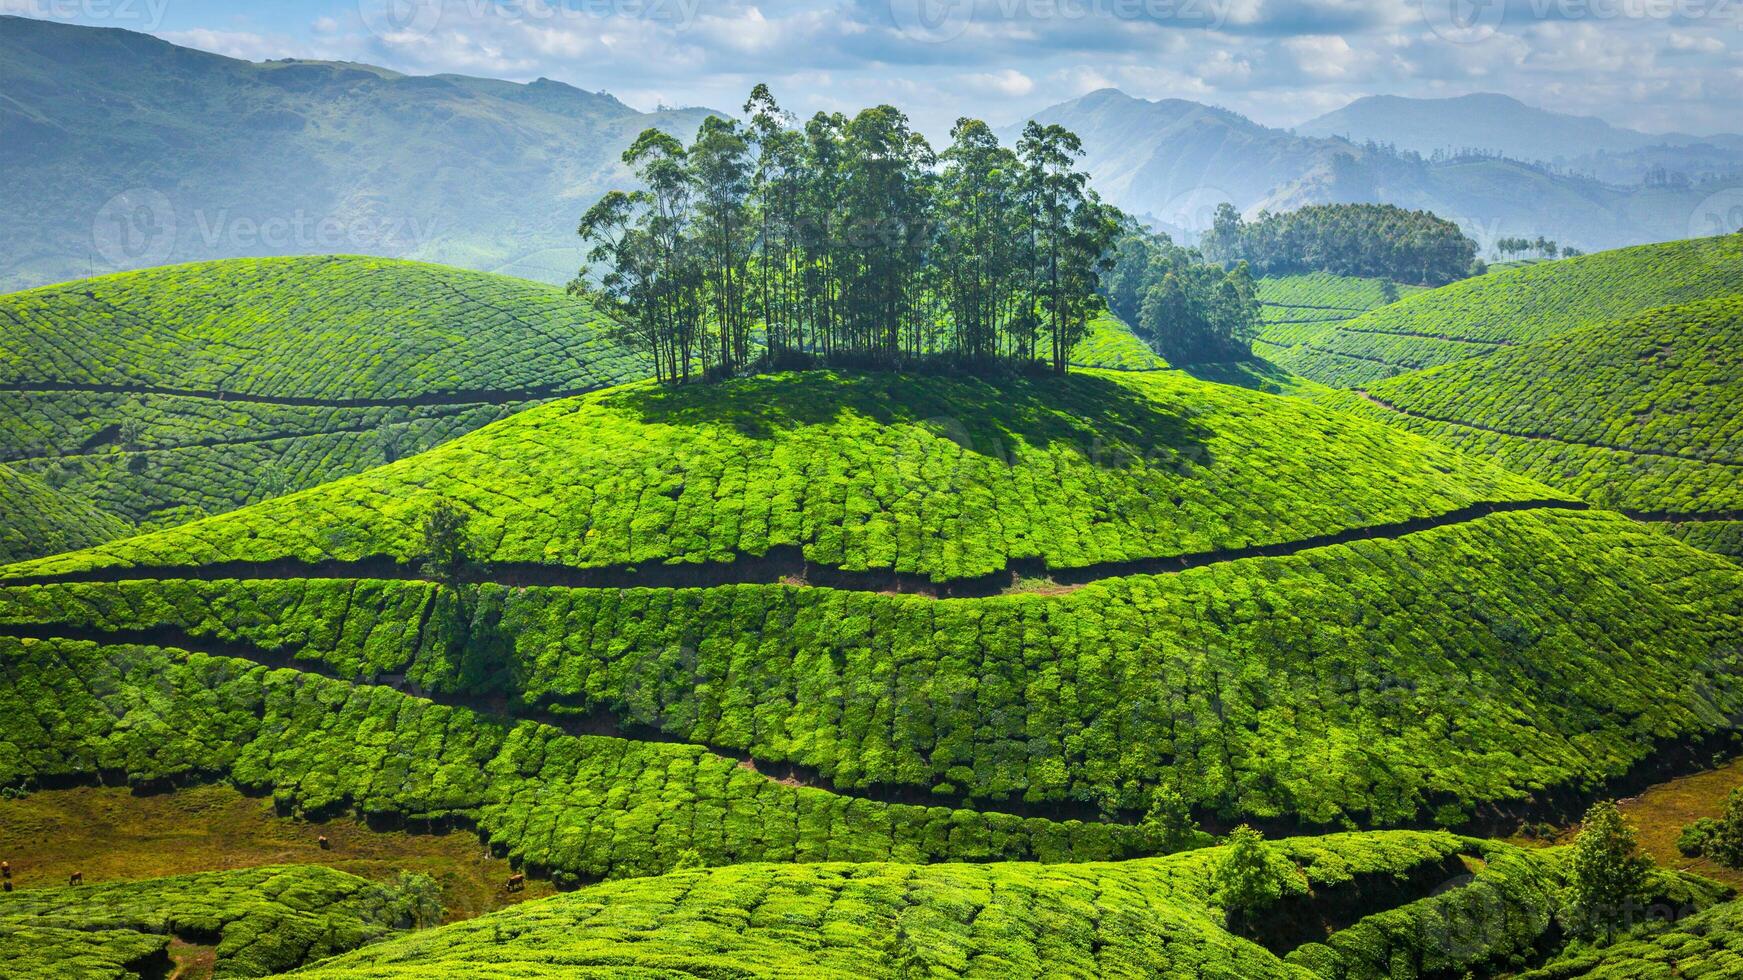 Grün Tee Plantagen im Indien foto